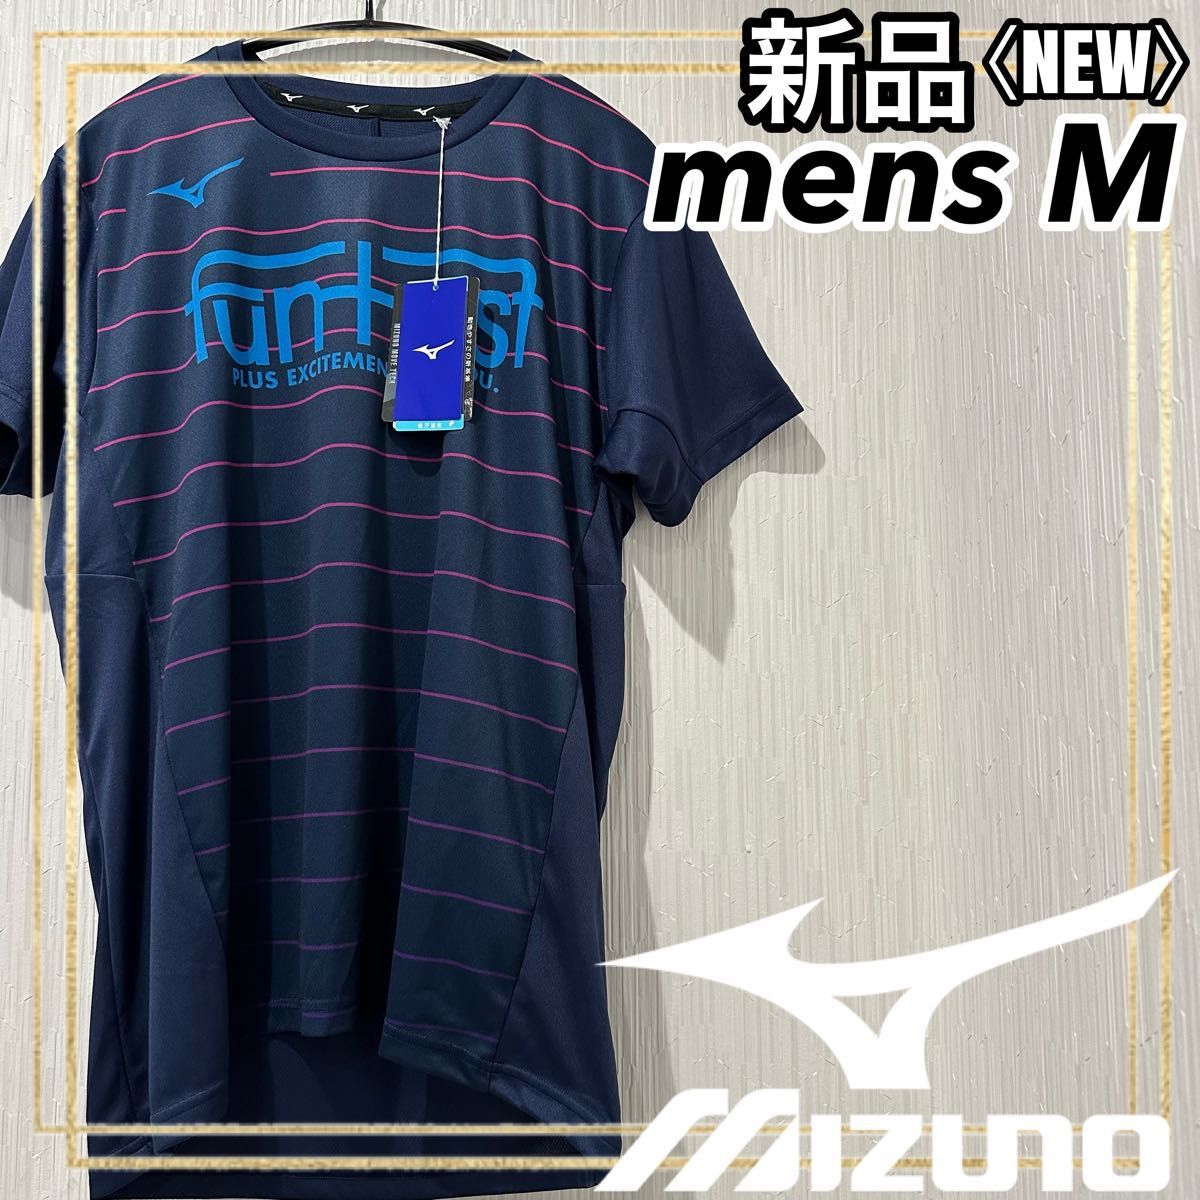 MIZUNOミズノ バレーボールウェア プラクティス半袖Tシャツ メンズM 新品